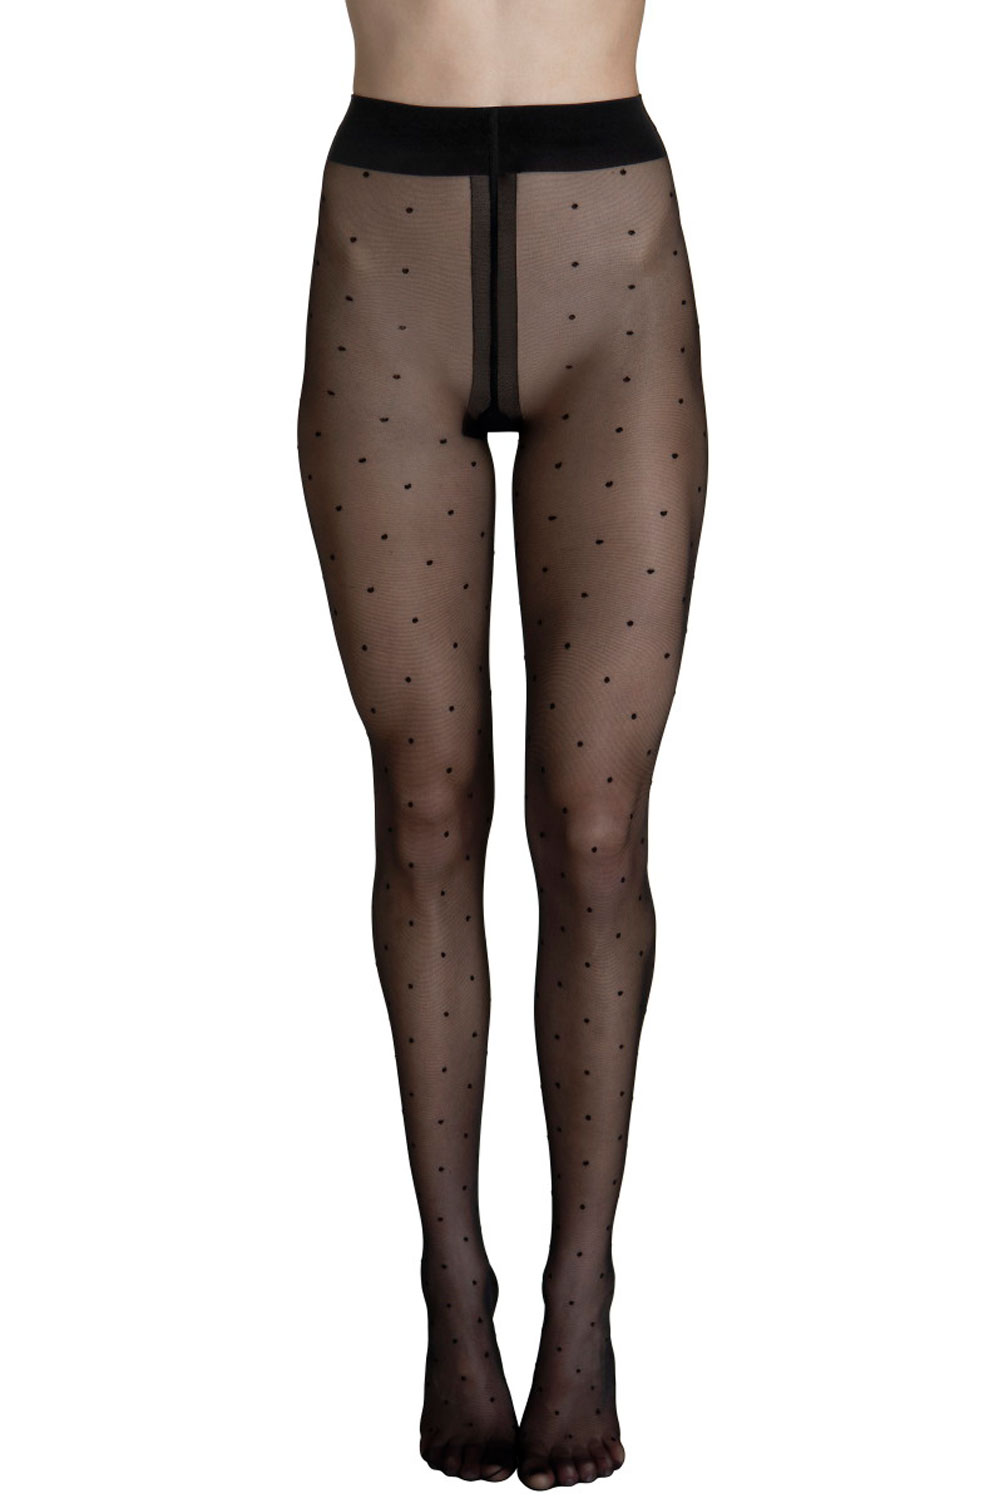 Lisca Fashion Dot 20 Strumpfhose mit Tupfen Socks and tights 46 schwarz günstig online kaufen